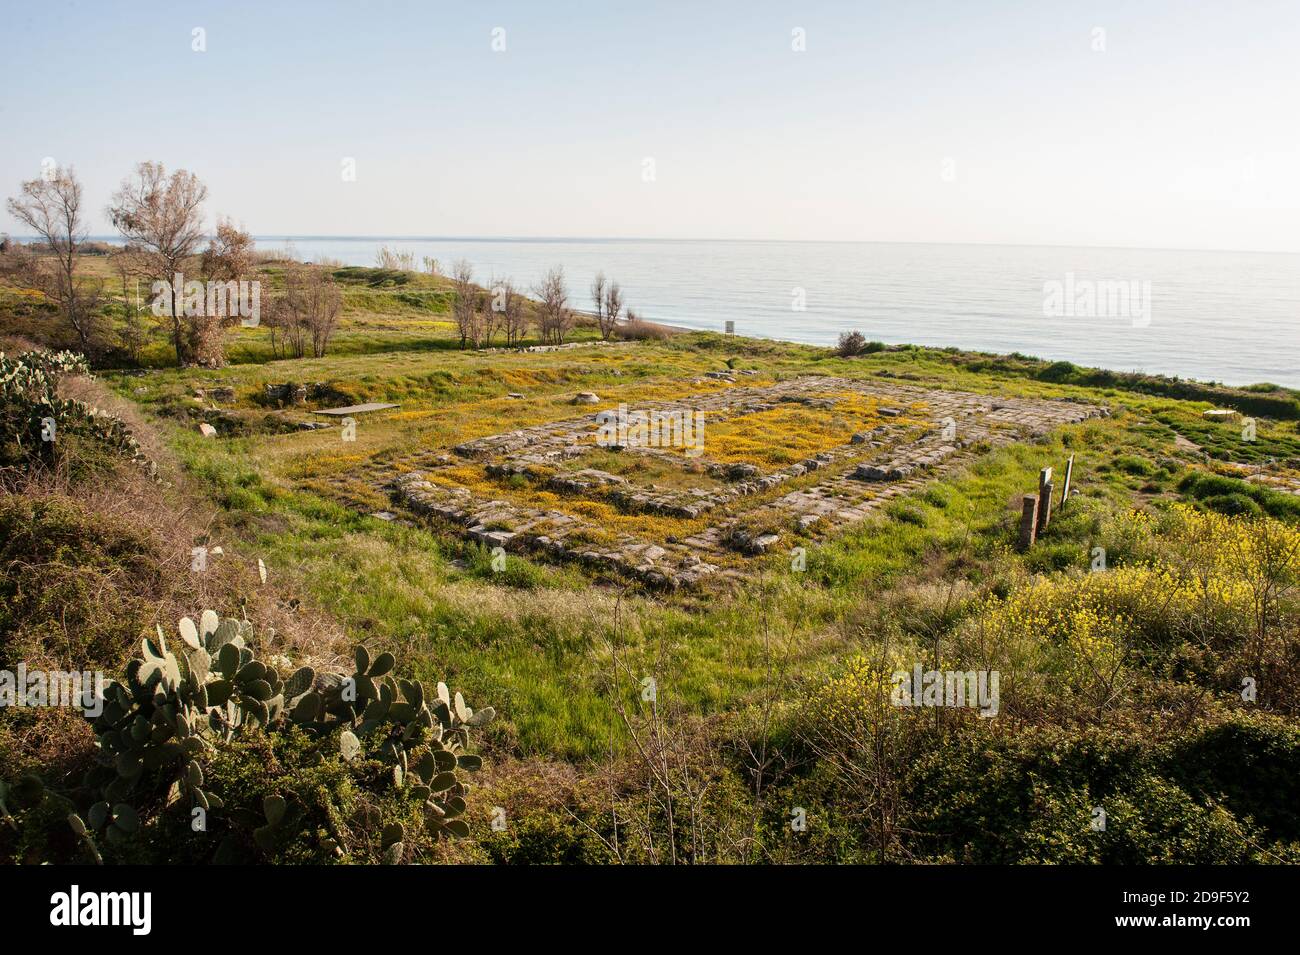 Italia Calabria Monasterace - resti archeologici dell'antica Kaulon Foto Stock